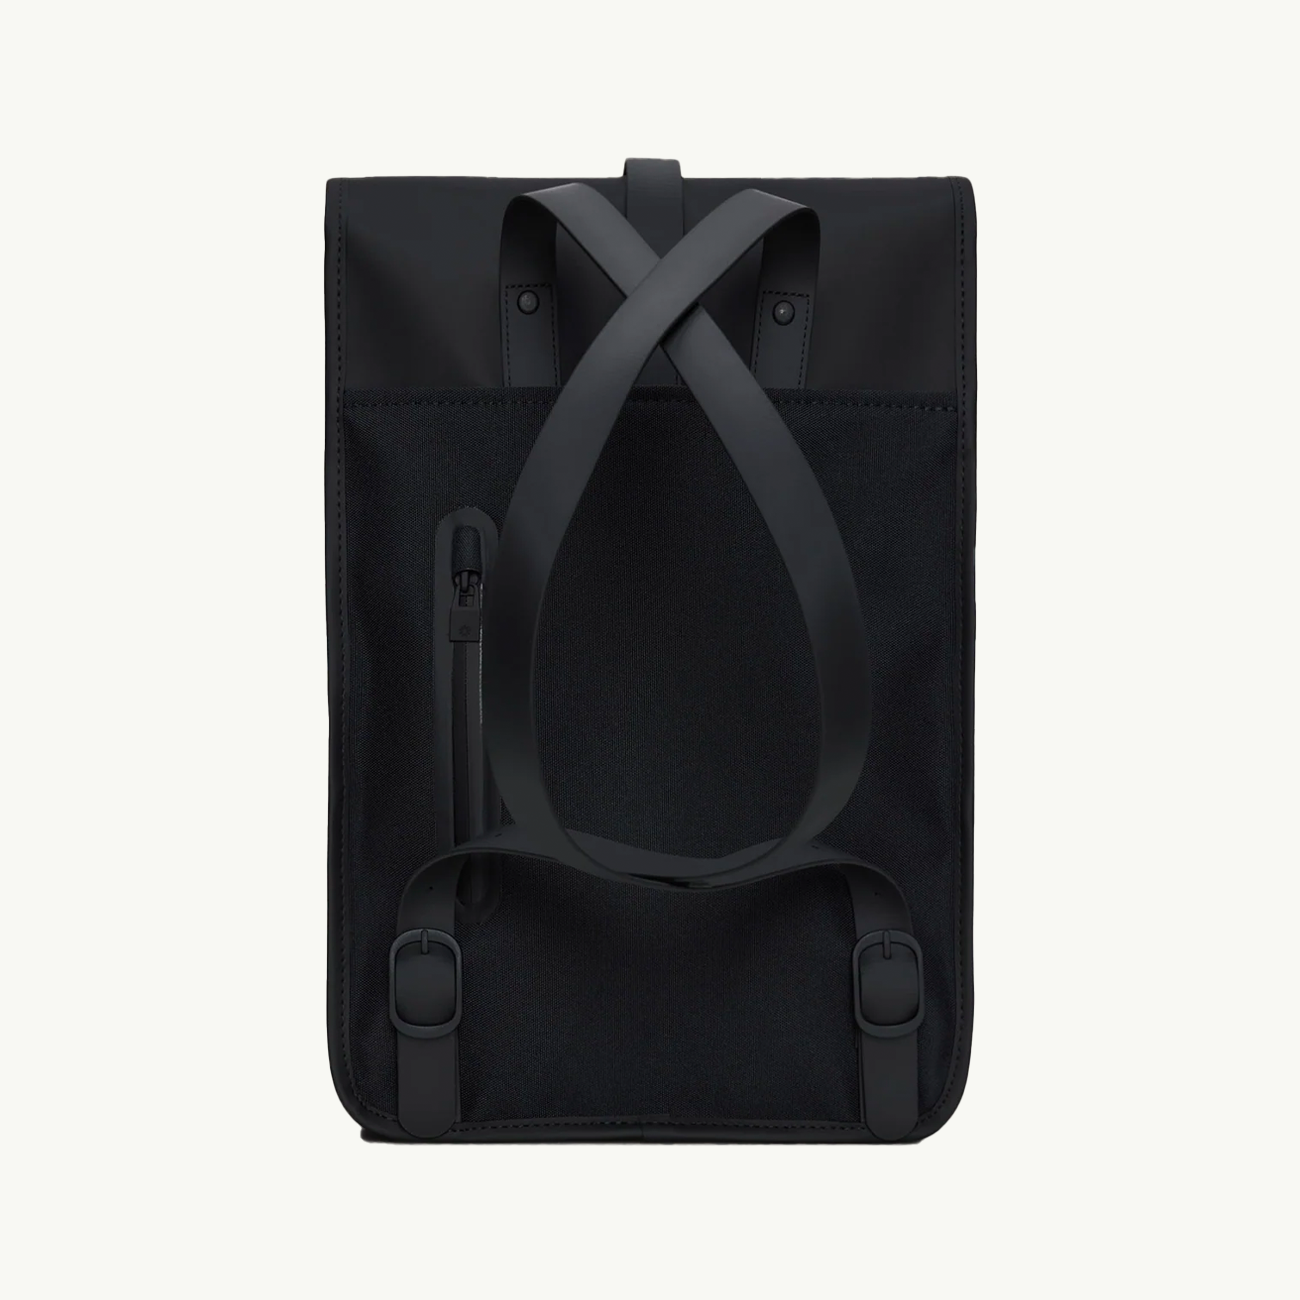 Backpack Mini - Black